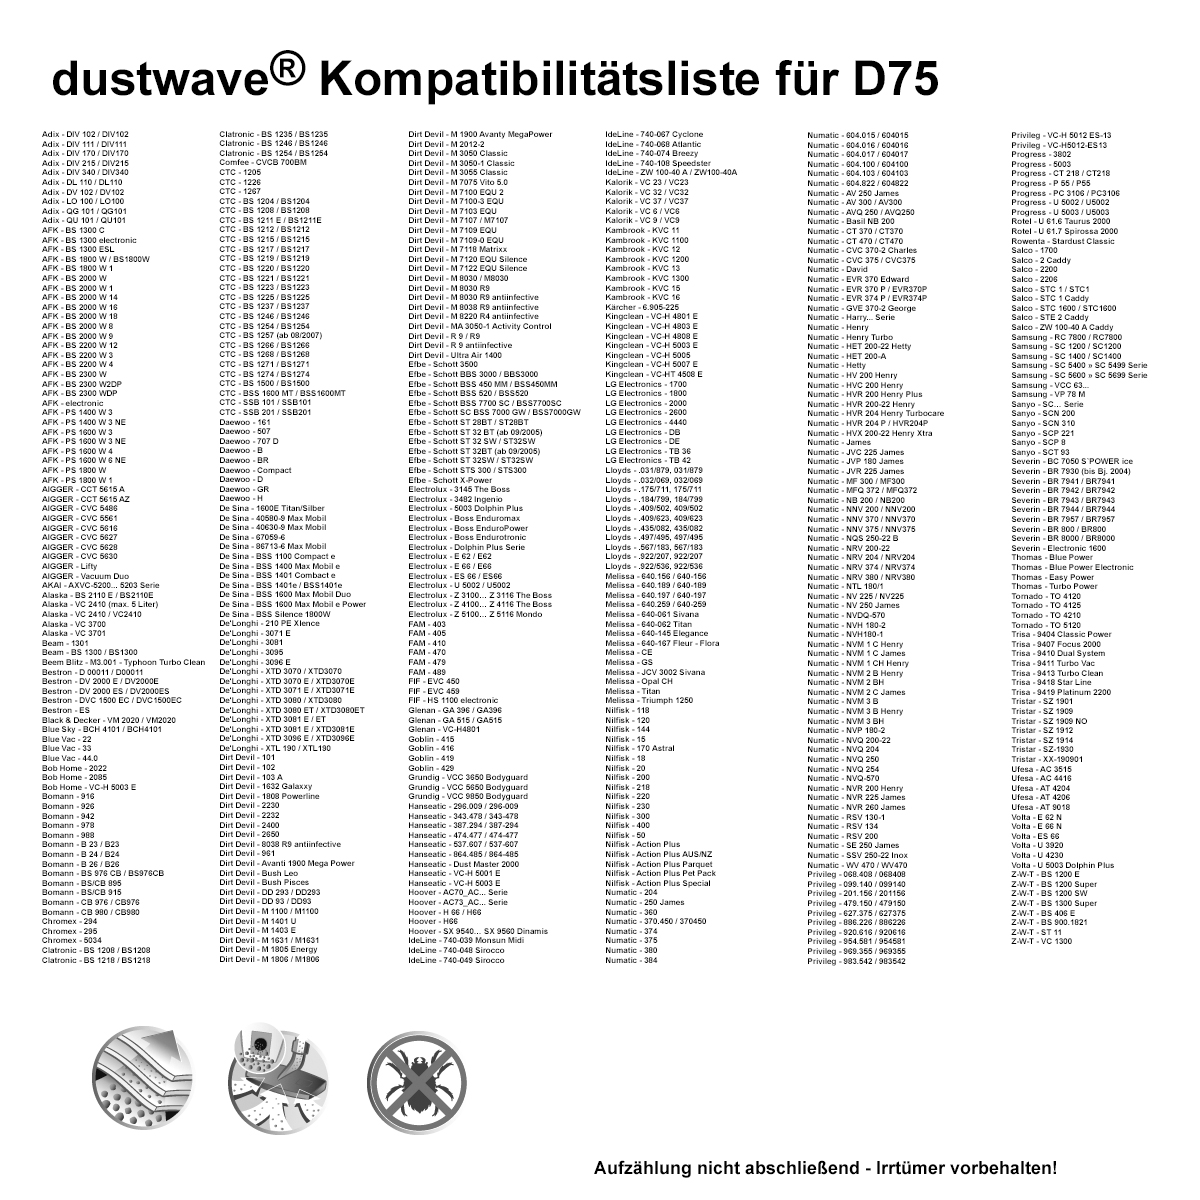 Dustwave® 1 Staubsaugerbeutel für Adix DL 110 / DL110 - hocheffizient mit Hygieneverschluss - Made in Germany